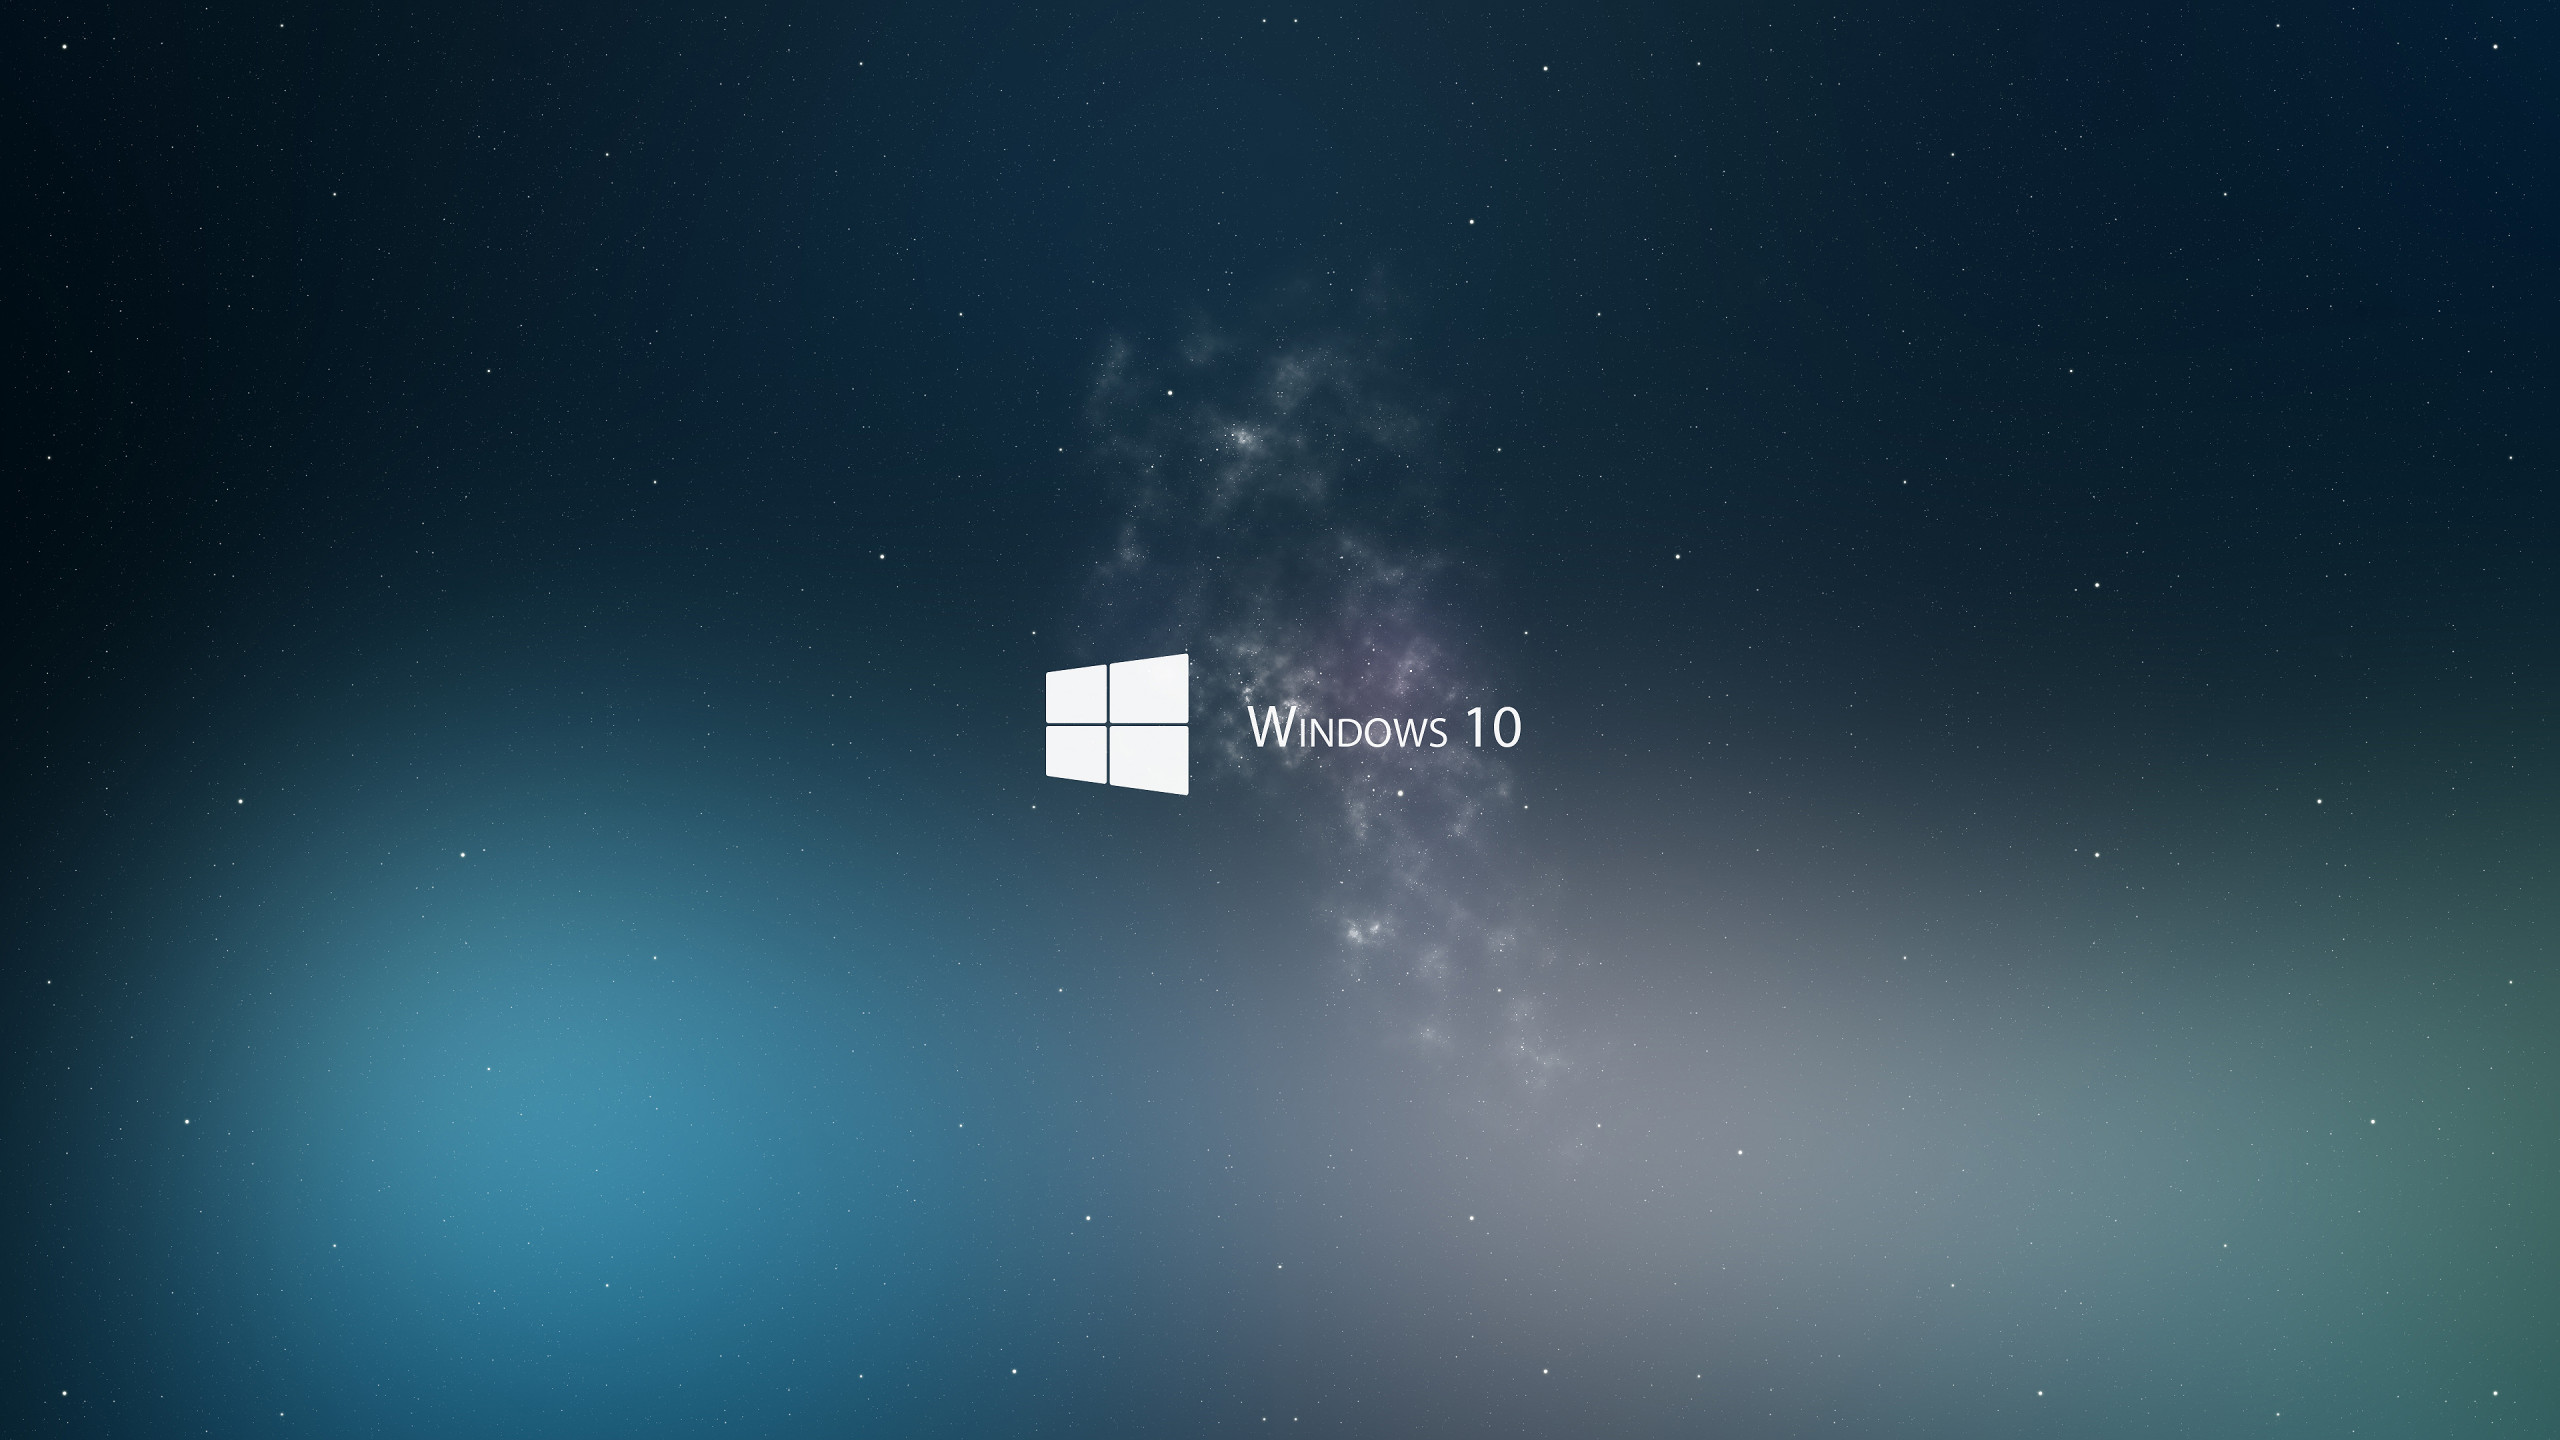 Bạn là một fan hâm mộ của Microsoft và đang tìm kiếm một hình nền đẹp cho chiếc máy tính của mình? Hãy khám phá ngay hình nền Windows 10, 4k, 5k, màu xanh, Microsoft, hệ điều hành #6995! Với thiết kế tinh tế và độ phân giải cực cao, hình nền này chắc chắn sẽ làm hài lòng bạn. Hãy săn lùng ngay và tải về ngay hôm nay!